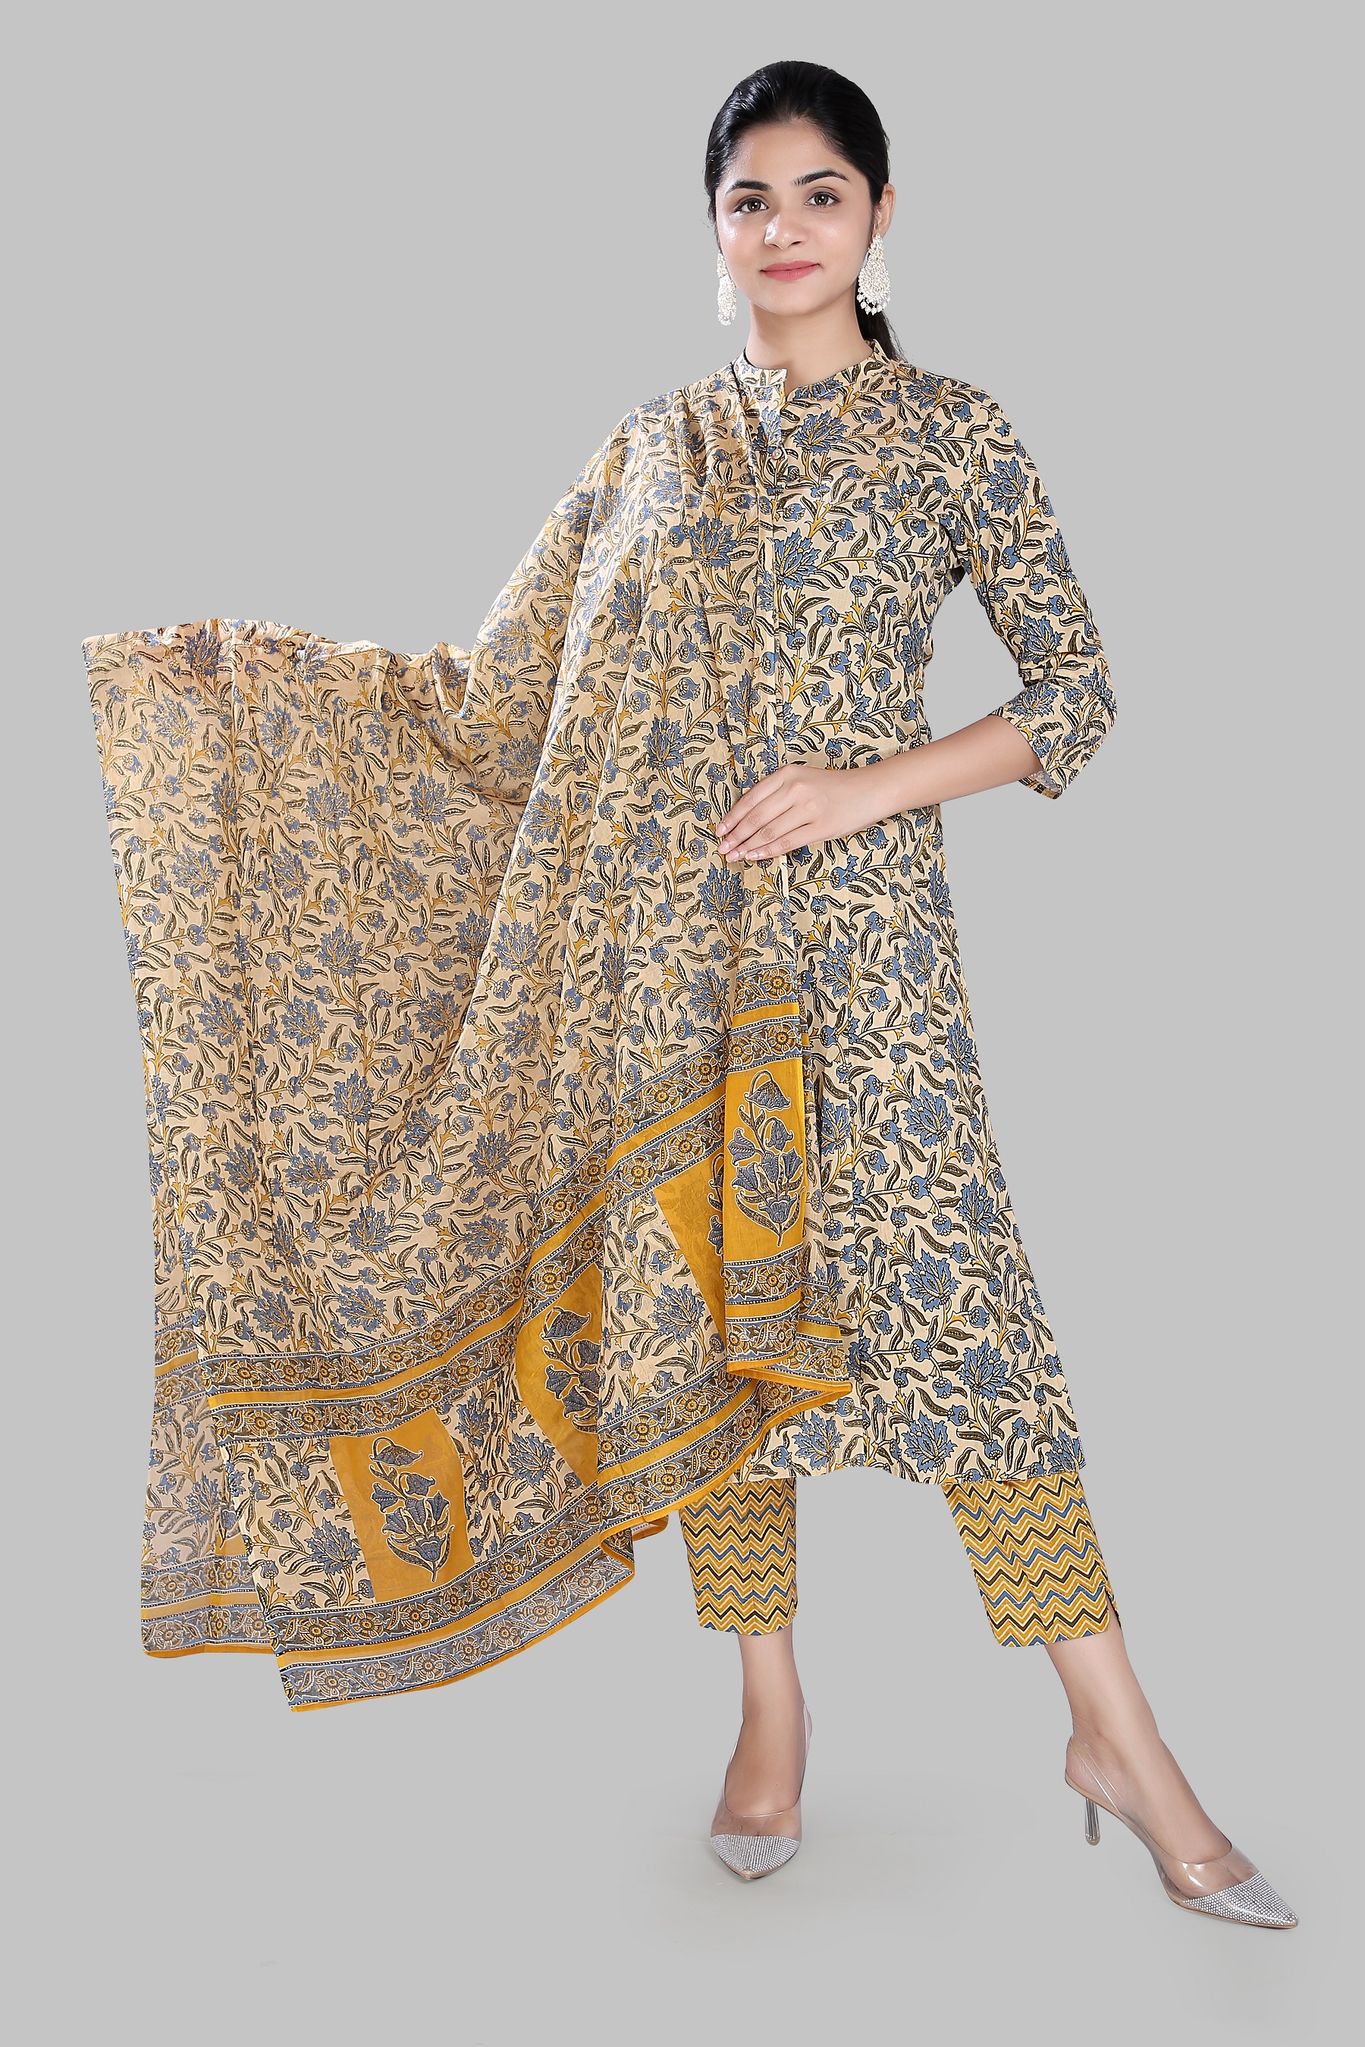 Taslima 1 Beige Jaipuri Cotton Suit Set